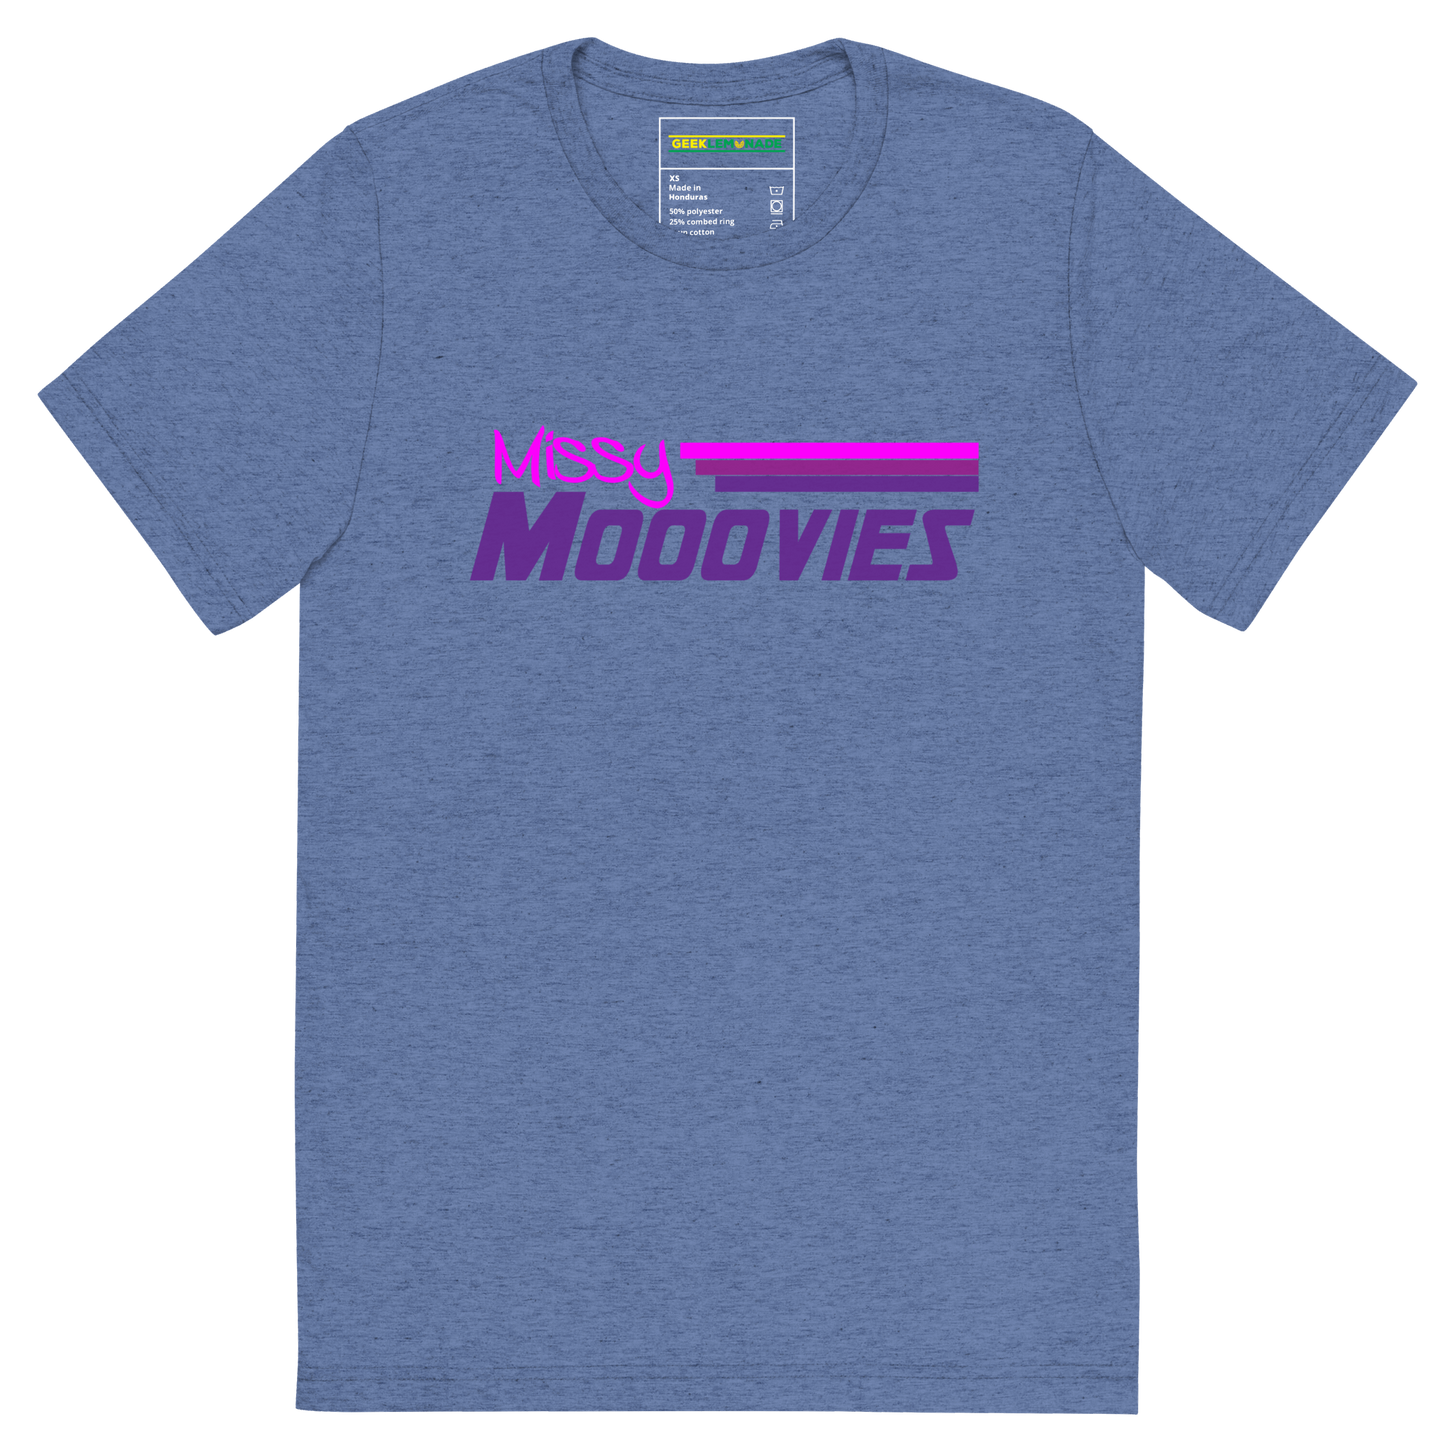 GeekLemonade Missy Moovies Short sleeve t-shirt